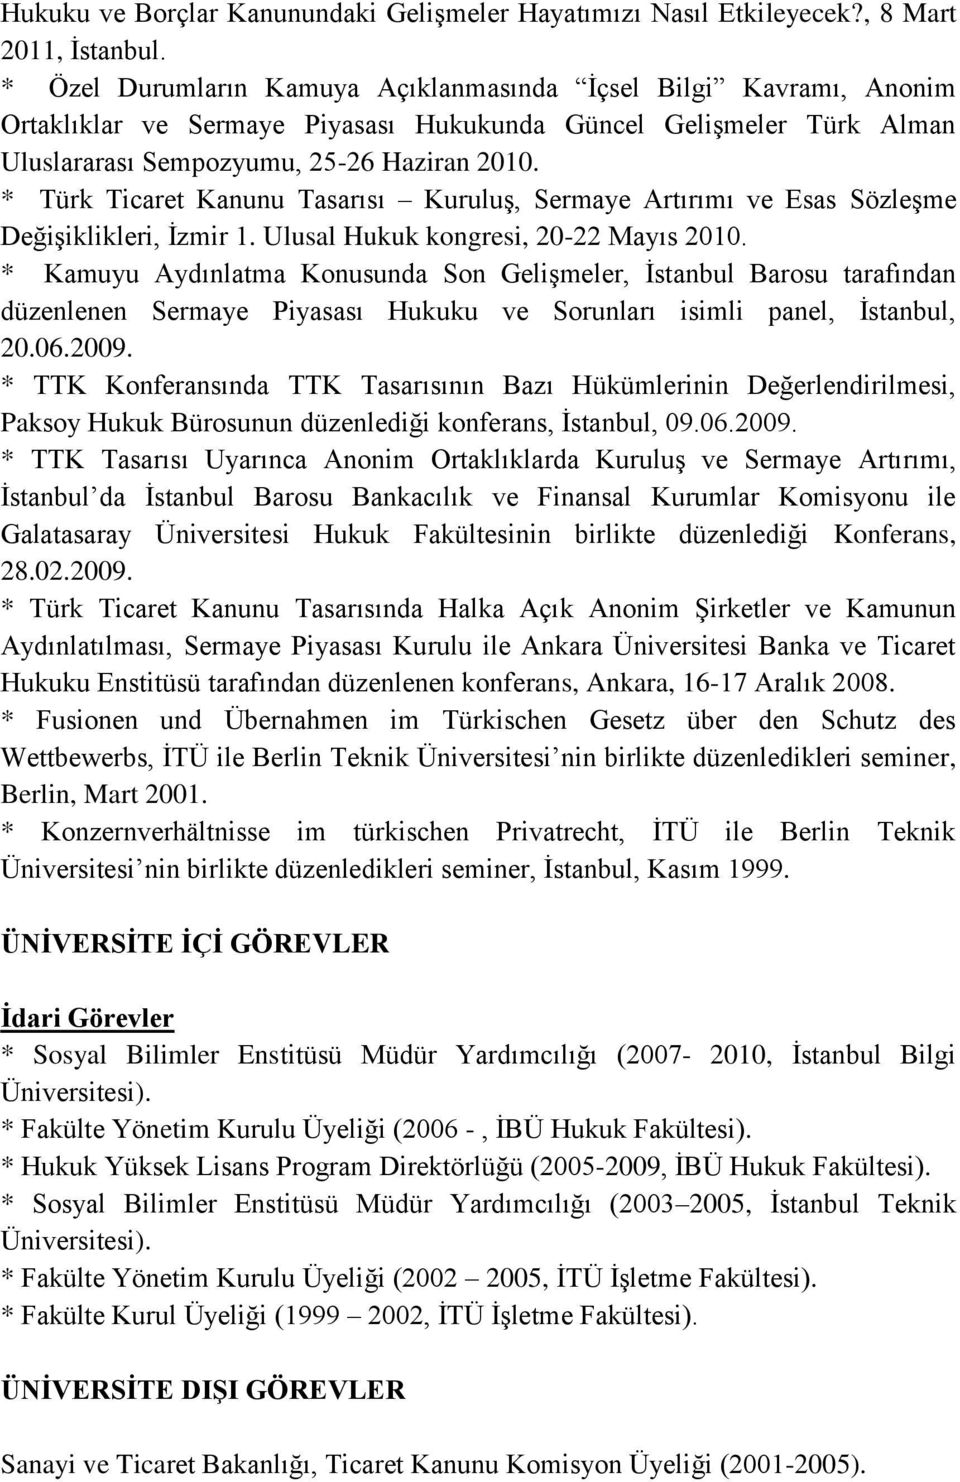 * Türk Ticaret Kanunu Tasarısı Kuruluş, Sermaye Artırımı ve Esas Sözleşme Değişiklikleri, İzmir 1. Ulusal Hukuk kongresi, 20-22 Mayıs 2010.